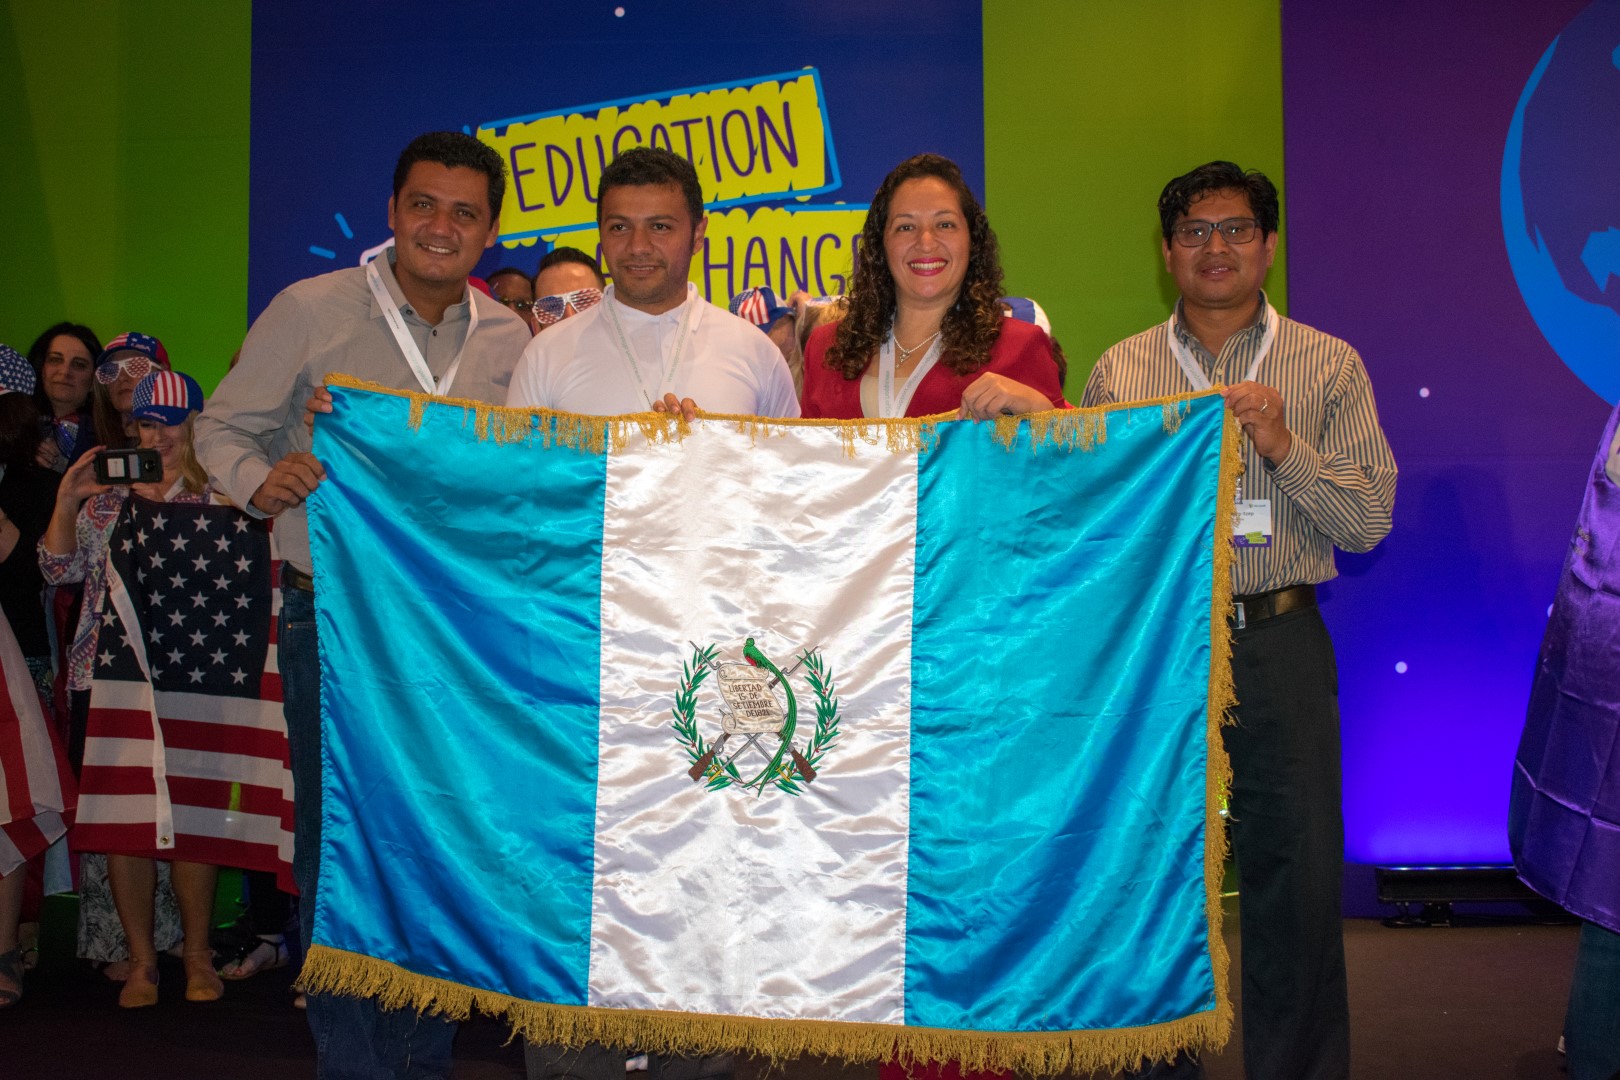 Personas sosteniendo la bandera de Guatemala frente a un letrero de Education Exchange